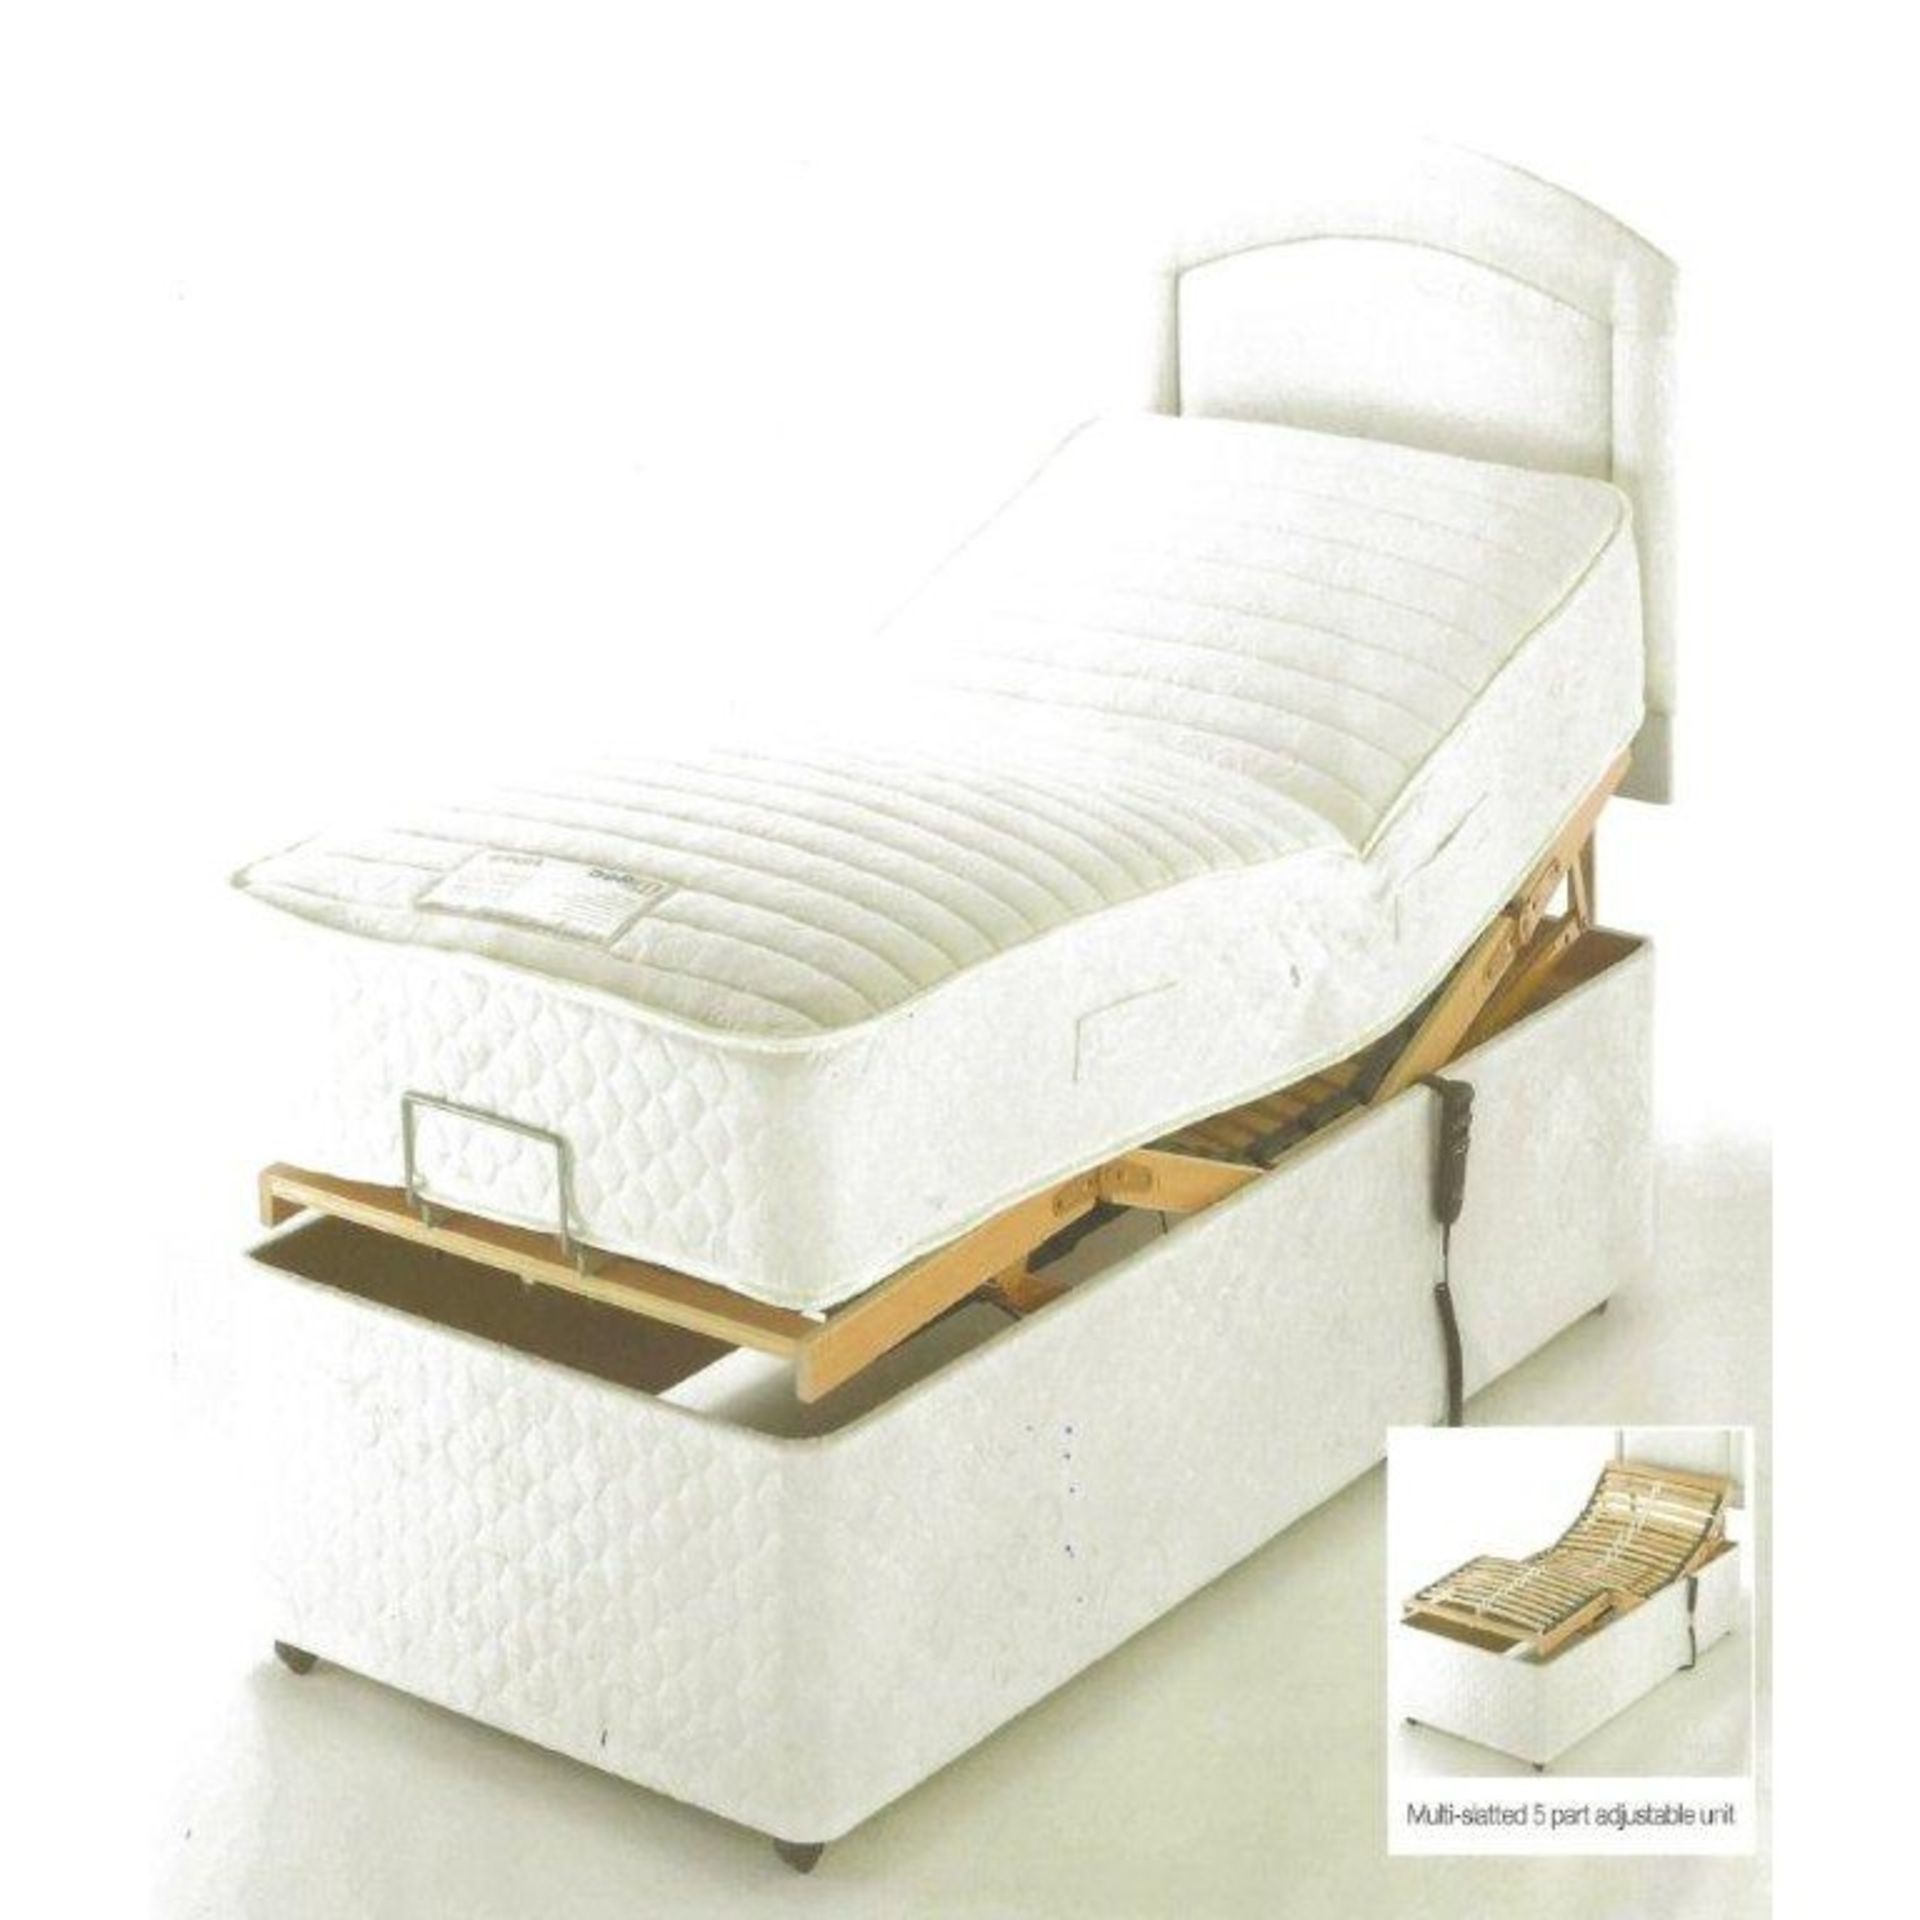 Brand New 30 Single Alpina Adjustable Electric Bed With Pocket Sprung Mattress - Image 2 of 2